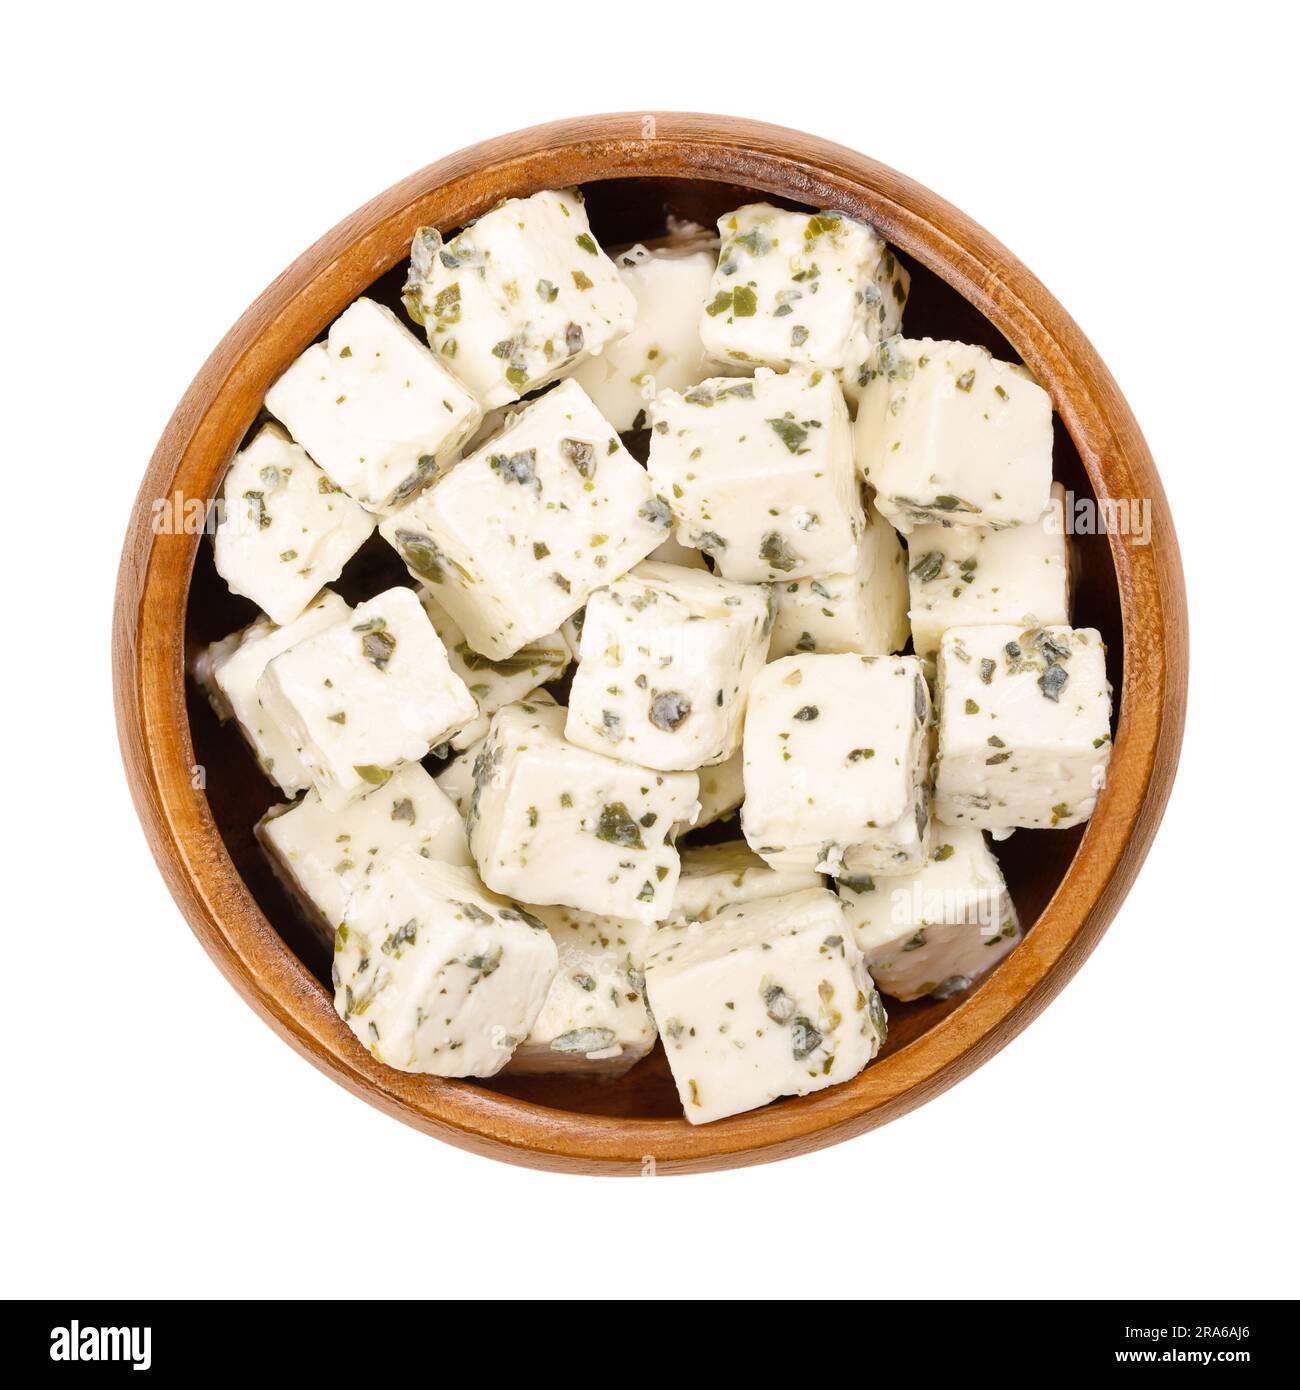 Feta greca, formaggio salato con erbe mediterranee, in ciotola di legno. Formaggio stagionato in salamoia, con consistenza morbida e umida, sapore fresco e salato. Foto Stock